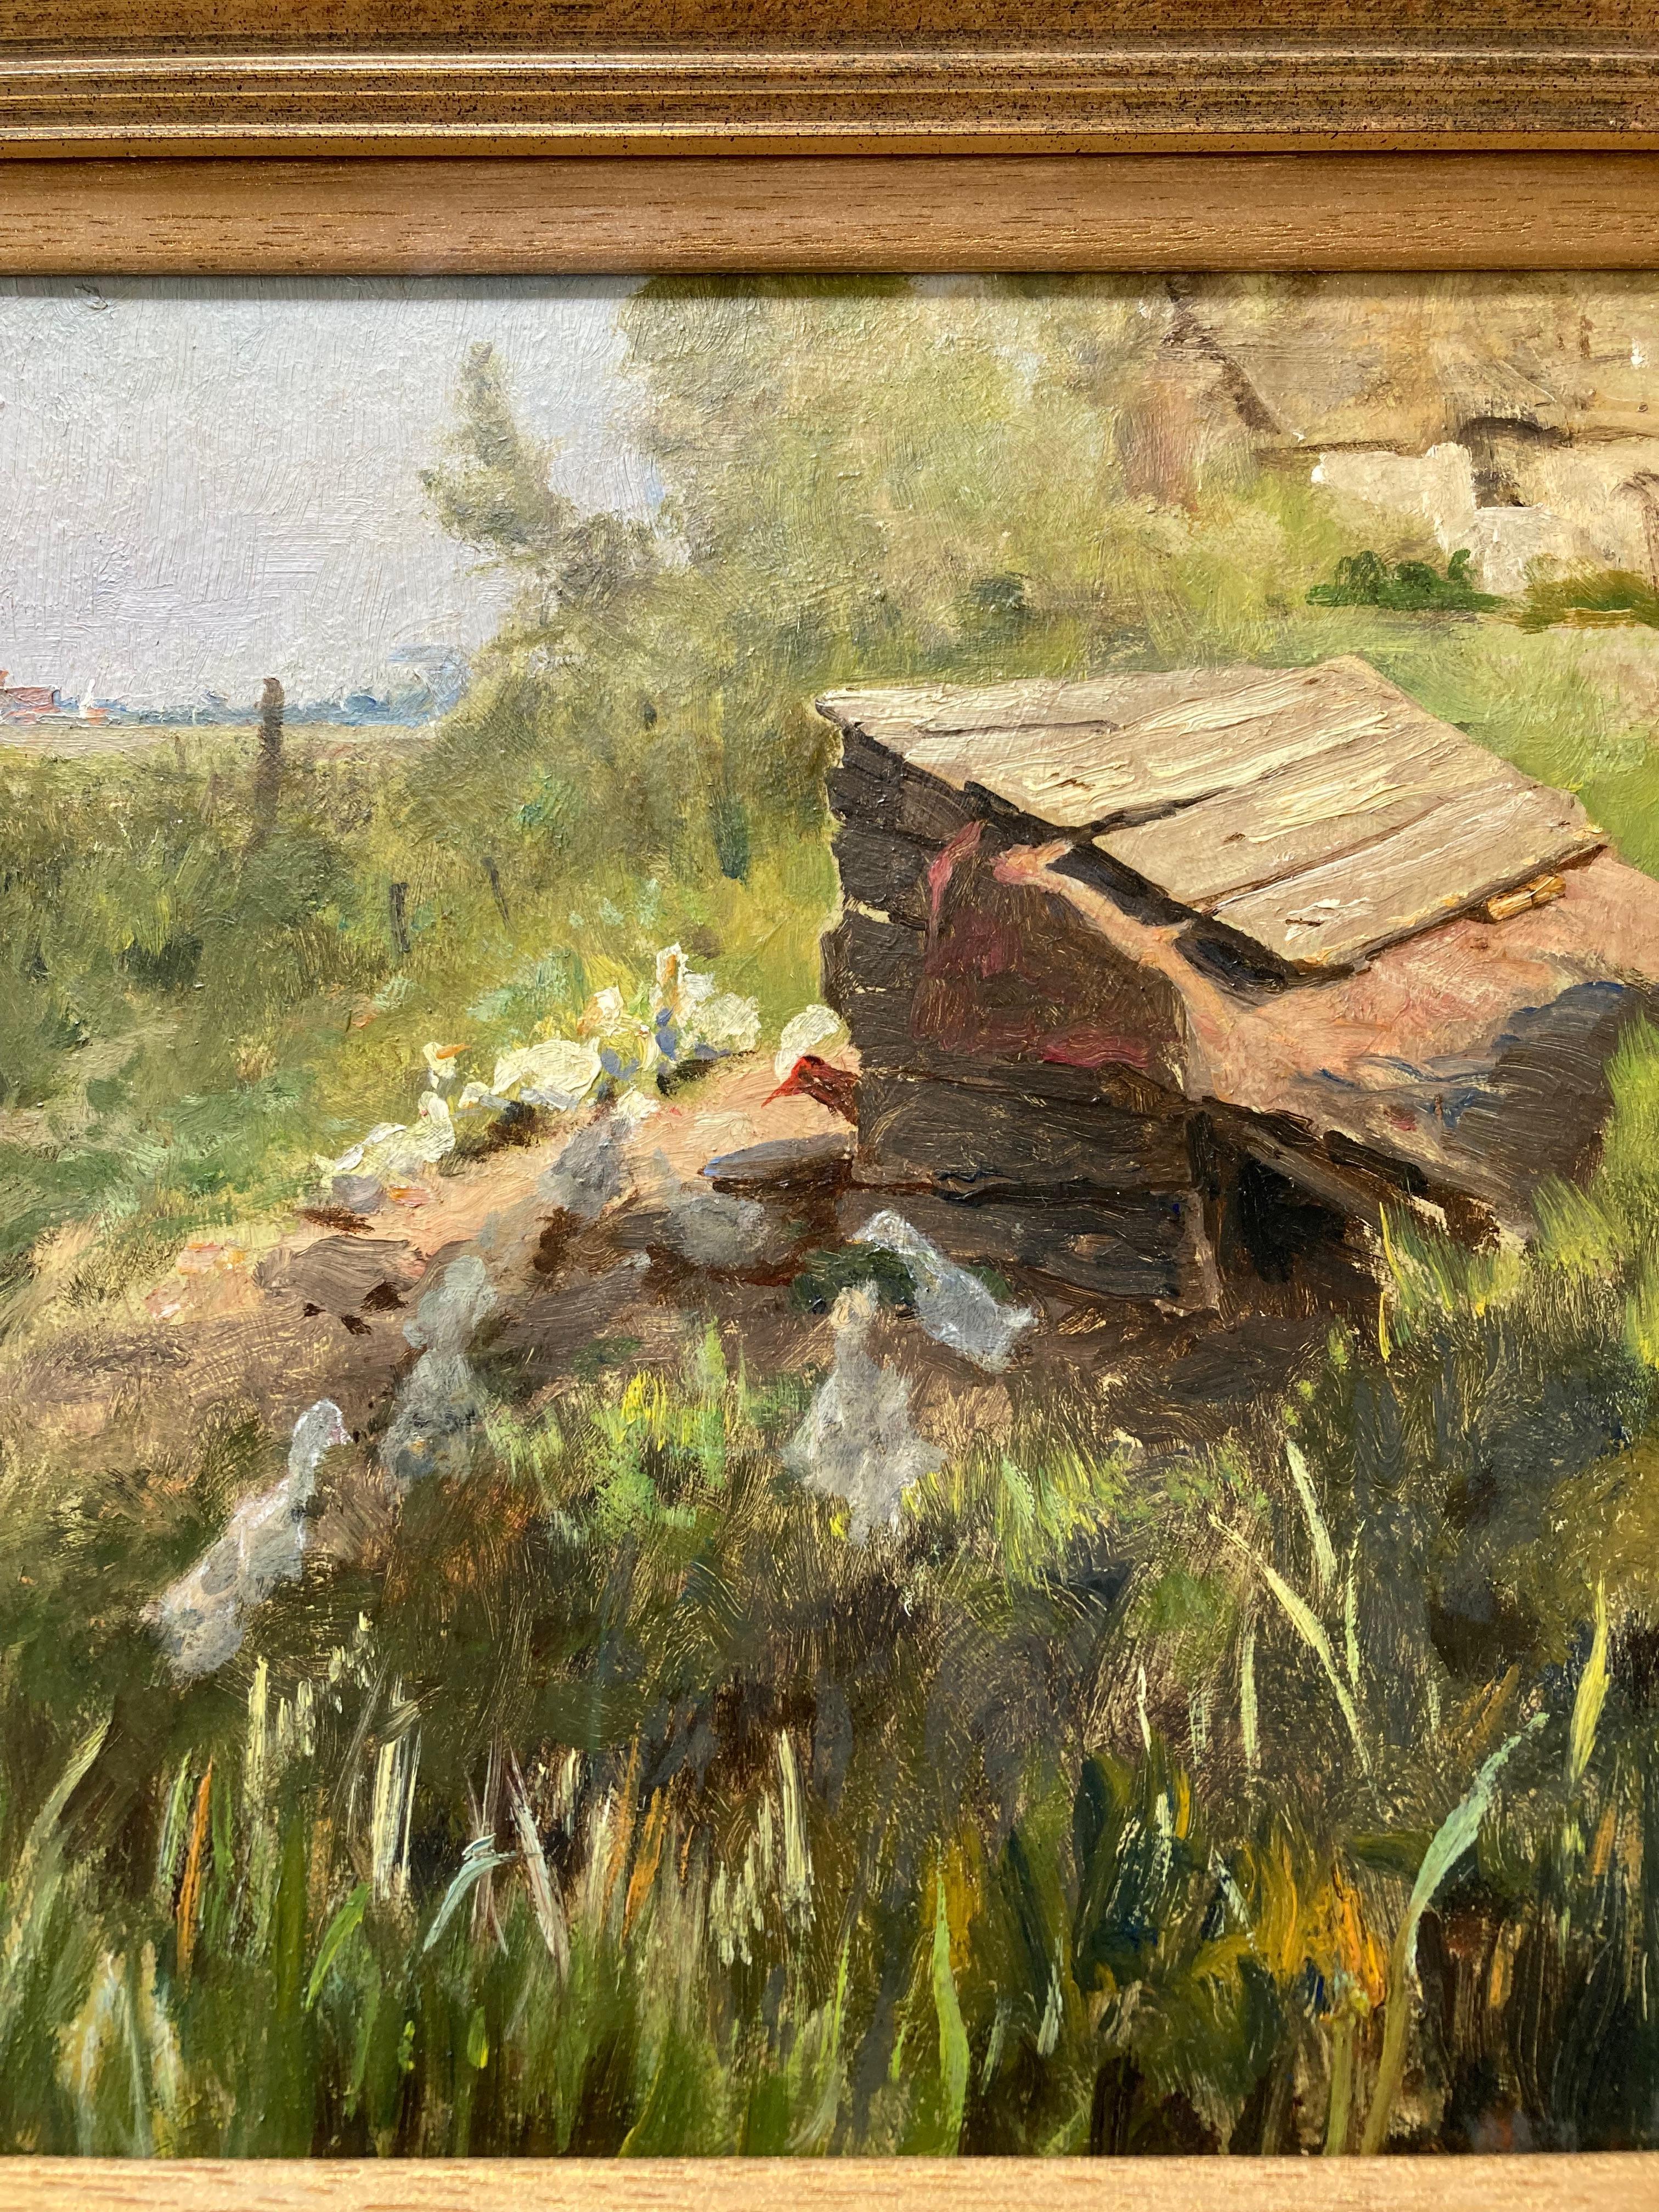 Une belle huile impressionniste de canards au soleil dans un paysage de Norfolk broads.

Frederick George Cotman (1850-1920)
Pont d'Acle, vers 1915
Inscrit au verso
Huile sur carton
10 x 16 pouces

Provenance : Collection de la famille